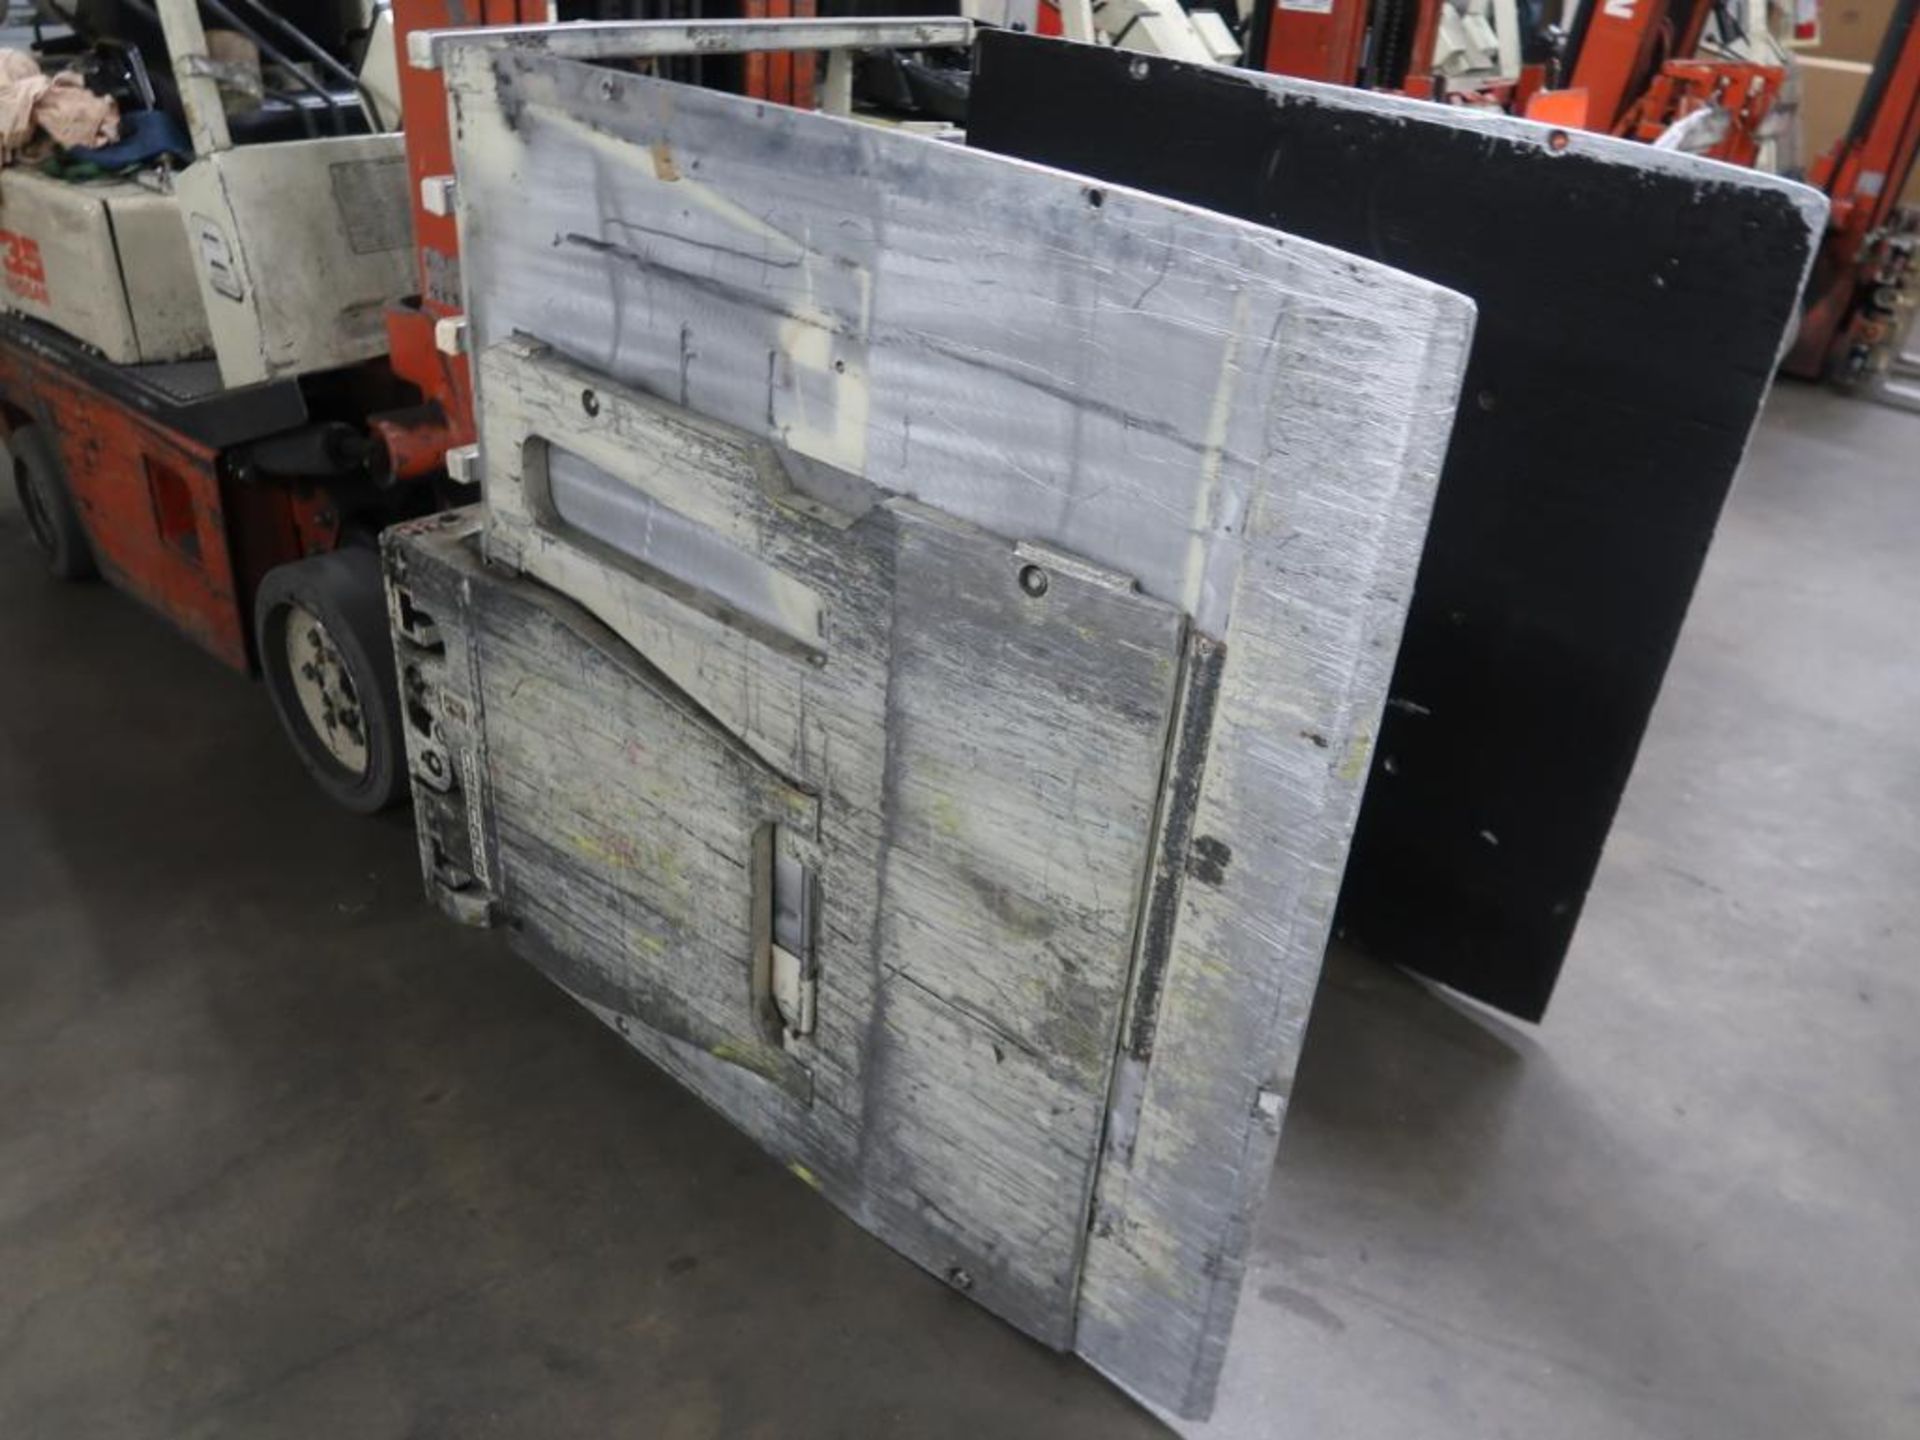 NISSAN 3200 lb. LP Clamp Forklift Model CPH01A18V, S/N 000210, 3-Stagre Mast (#380) - Image 2 of 5